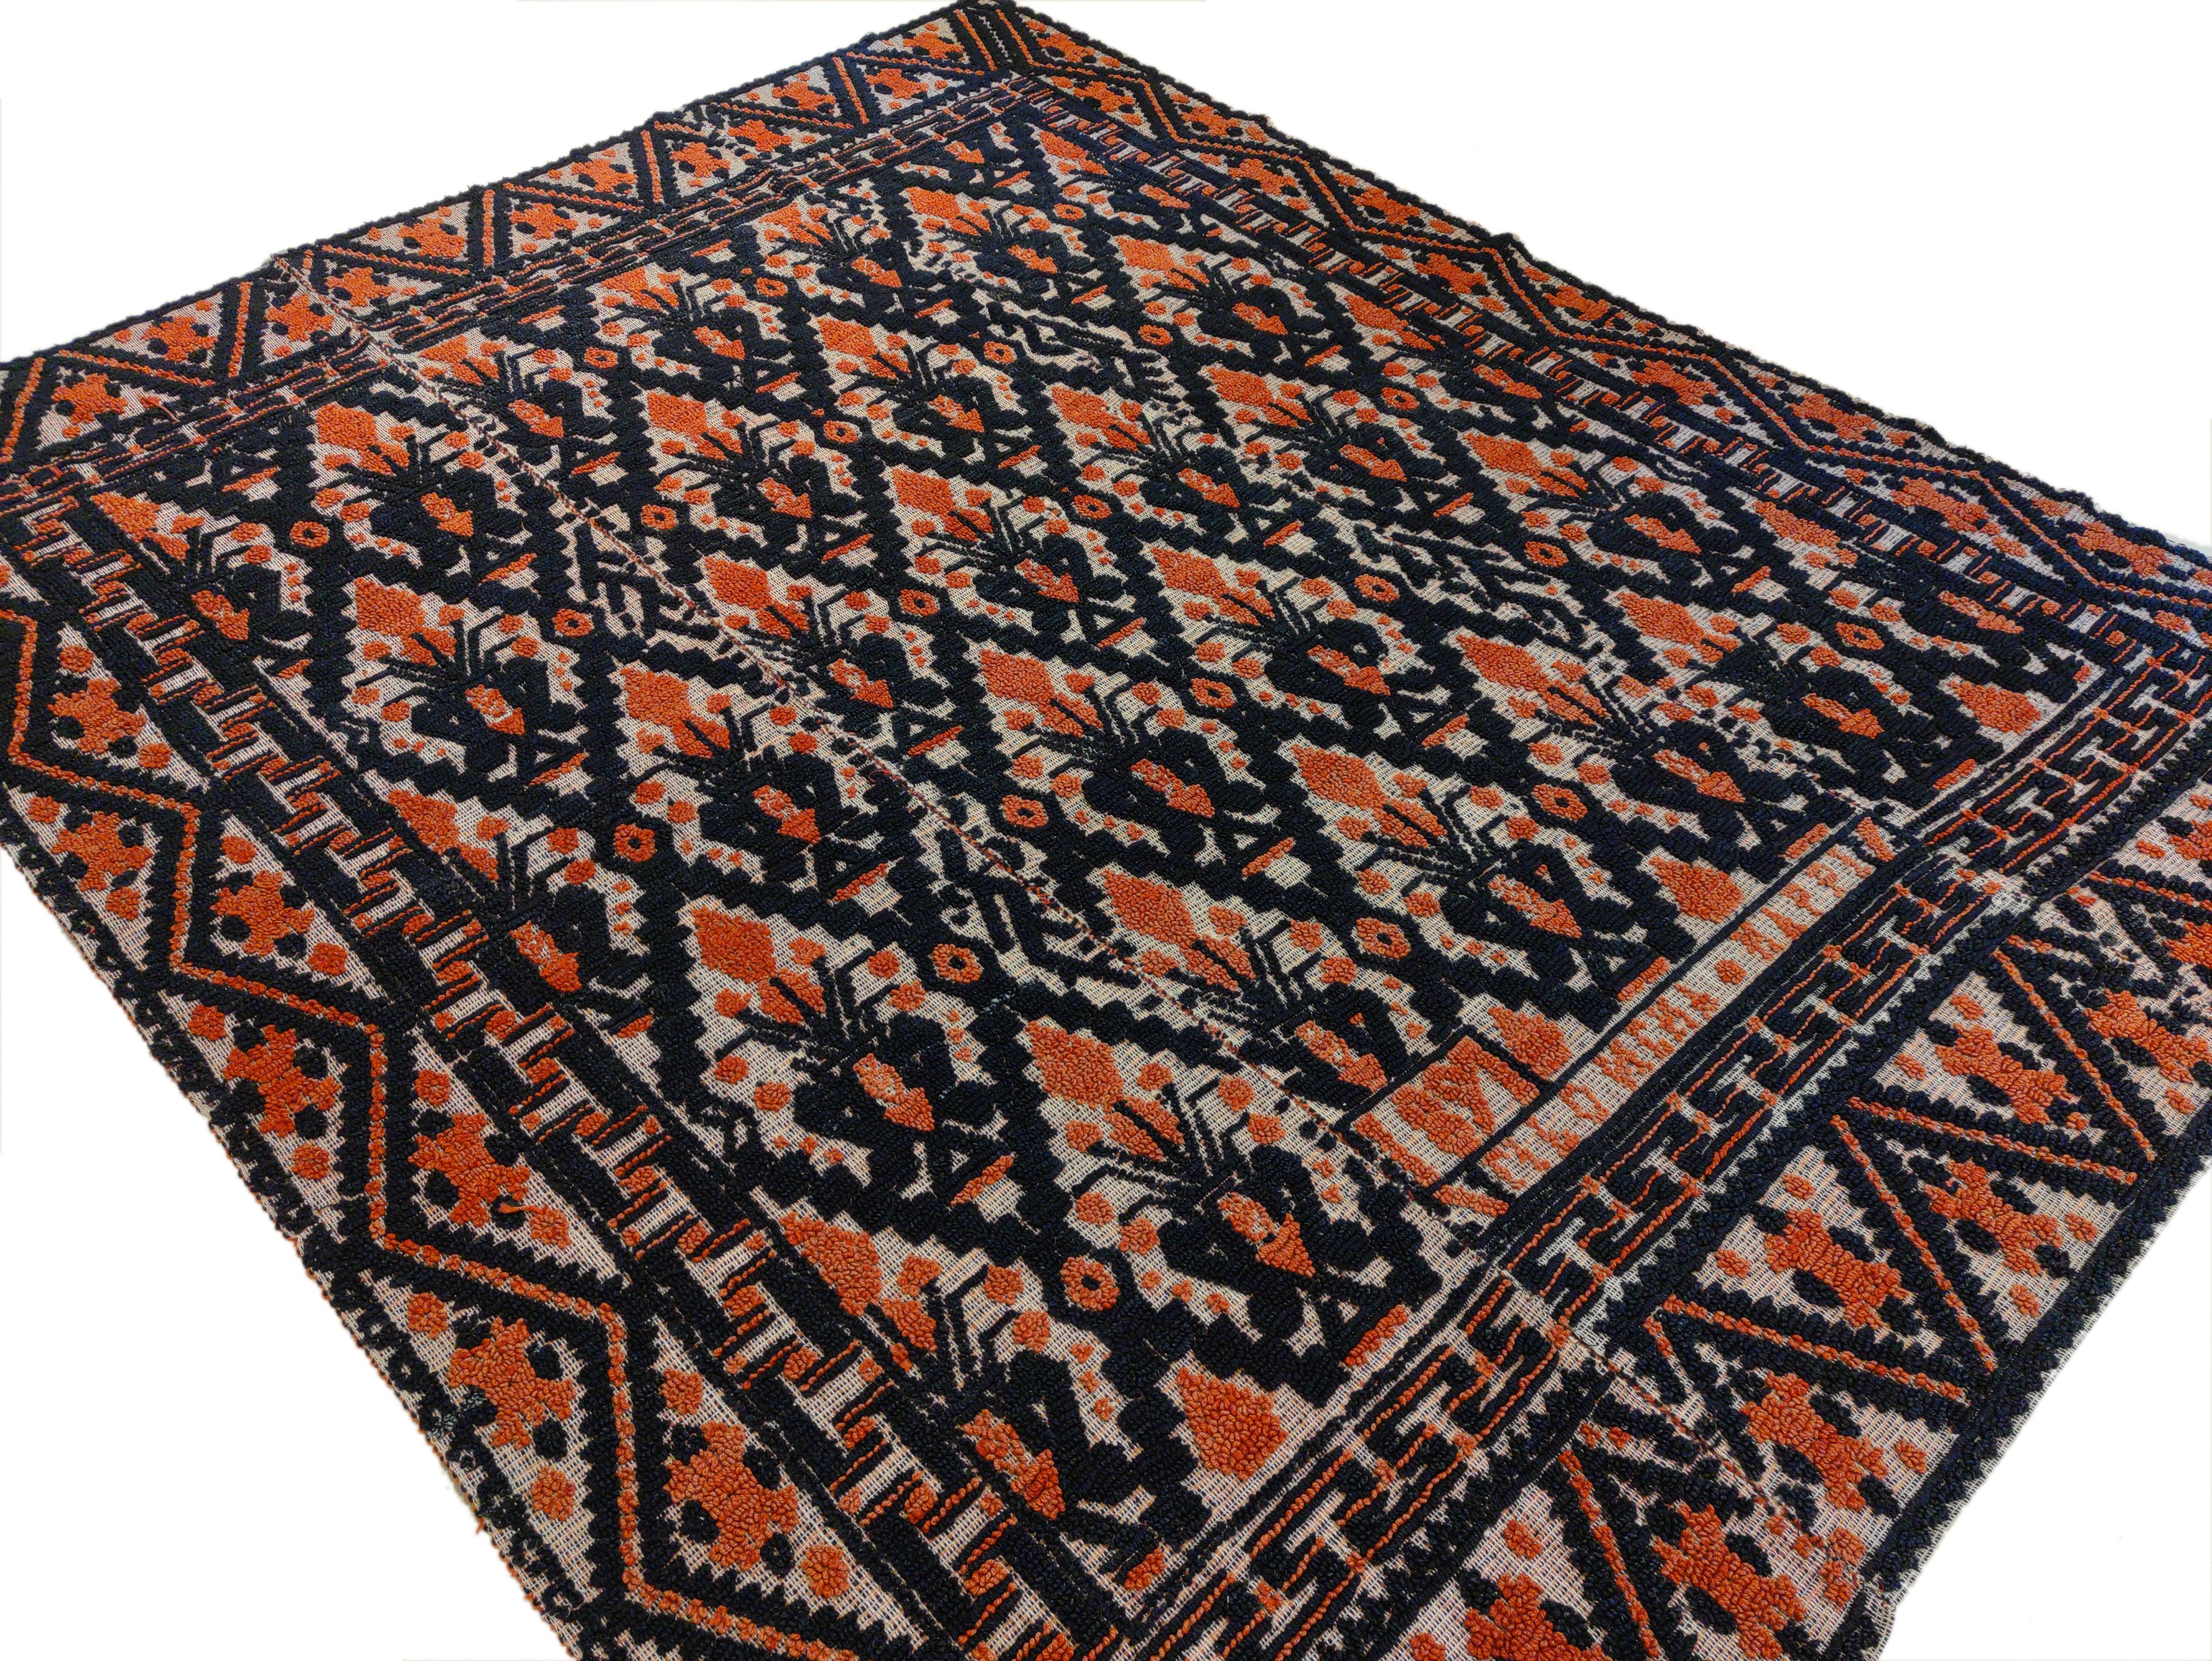 Alpujarra-Teppiche wurden traditionell zwischen dem 15. und 19. Jahrhundert in den Dörfern des Alpujarra-Distrikts gewebt, der im Süden Spaniens in der Region Granada liegt. Sie werden aus Wolle auf einem Leinengrund in Schlingentechnik gewebt,